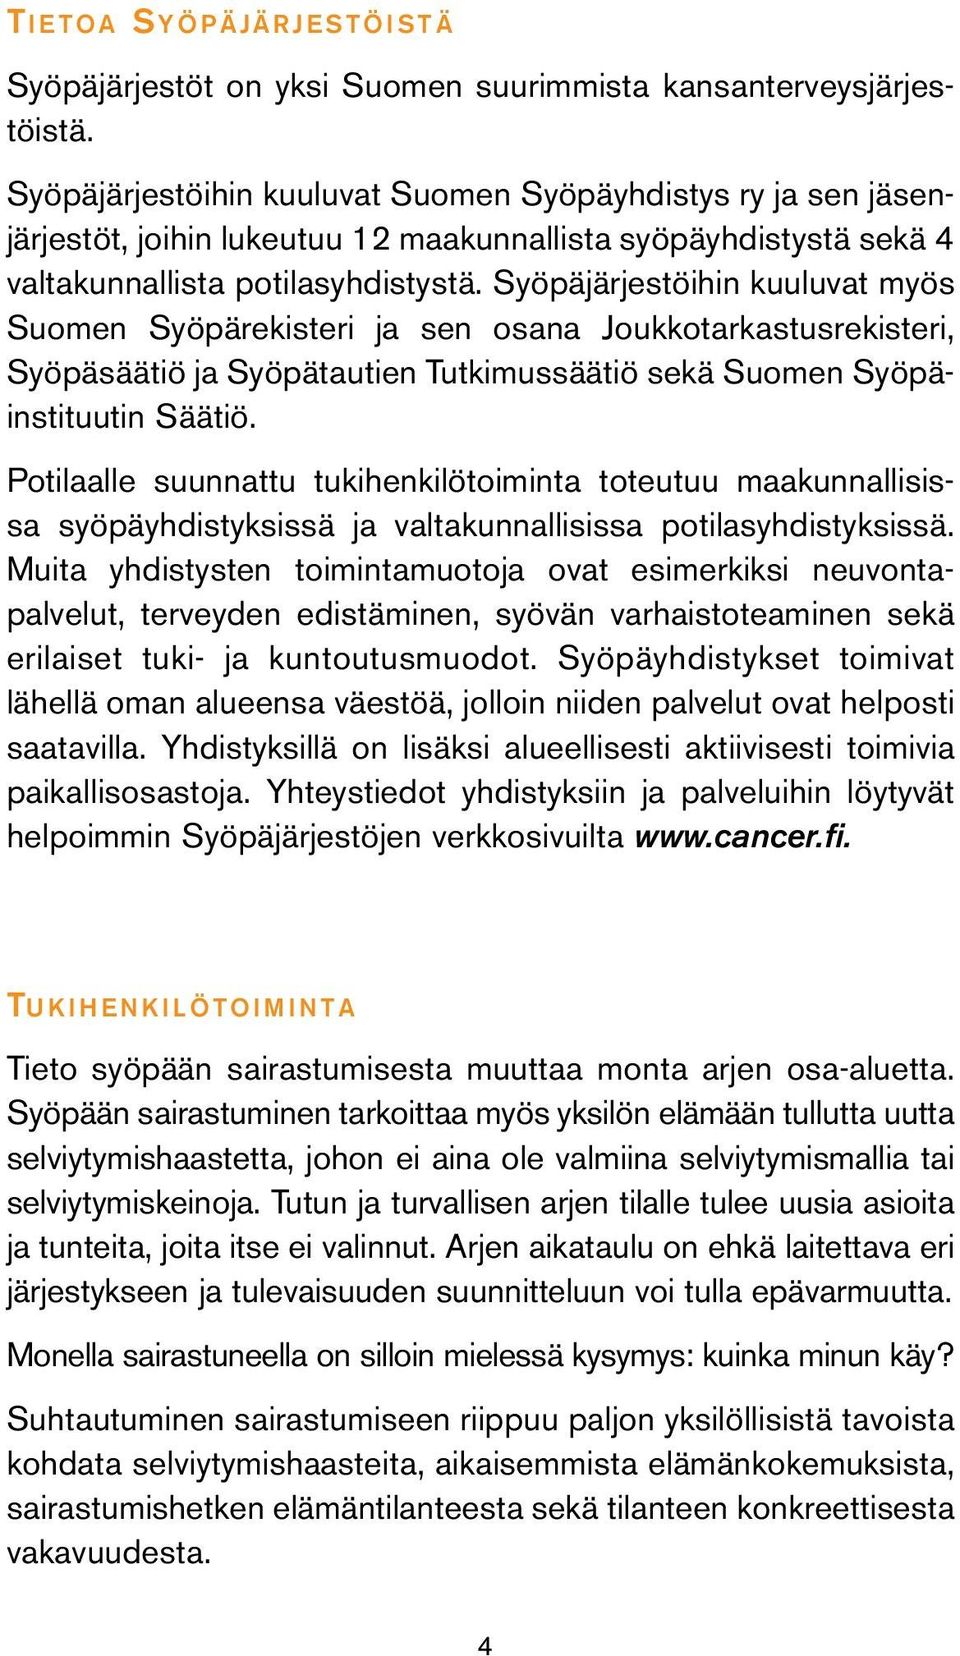 Syöpäjärjestöihin kuuluvat myös Suomen Syöpärekisteri ja sen osana Joukkotarkastusrekisteri, Syöpäsäätiö ja Syöpätautien Tutkimussäätiö sekä Suomen Syöpäinstituutin Säätiö.